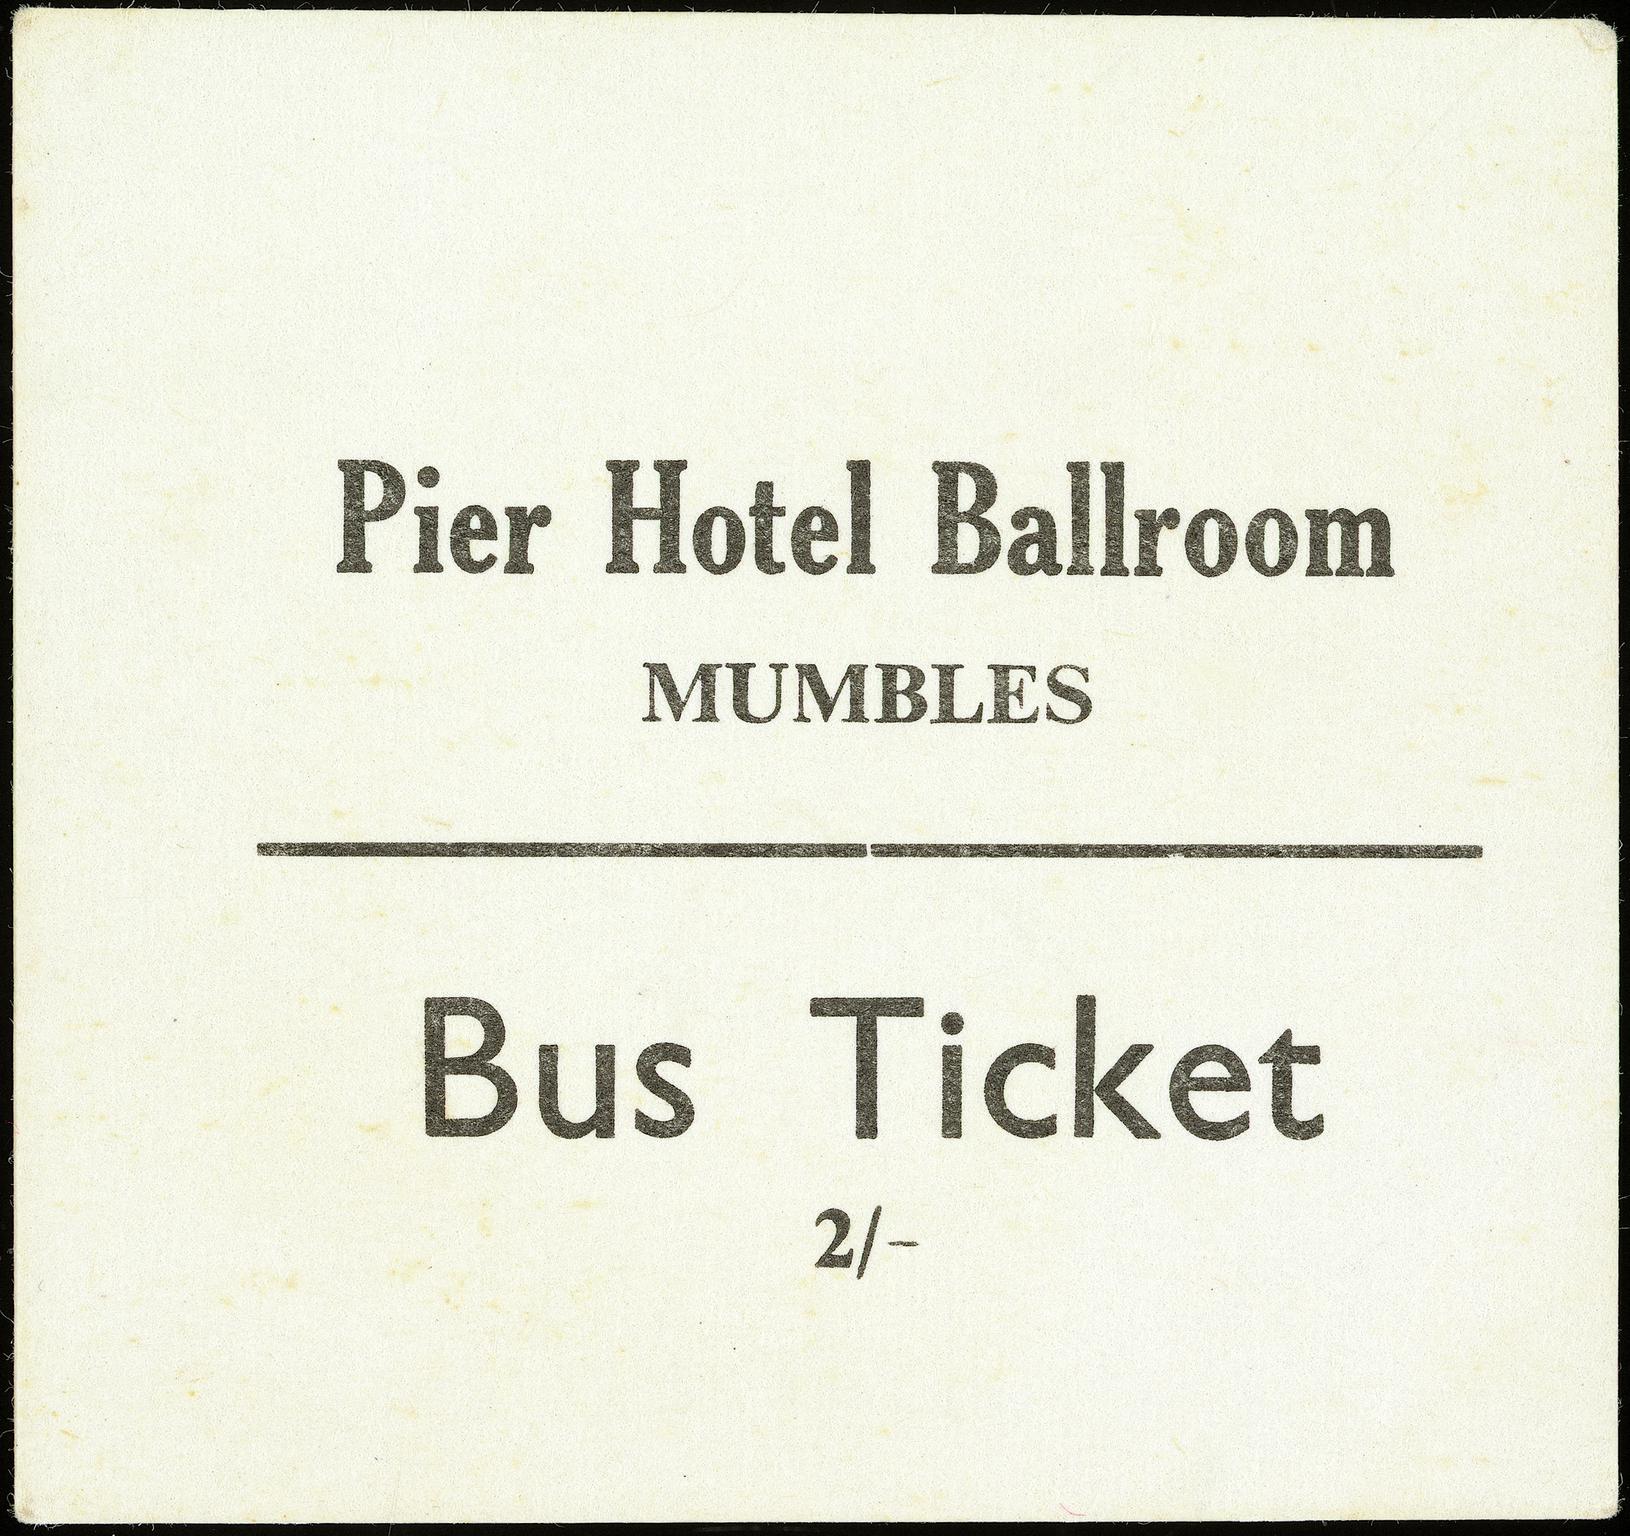 Pier Hotel Ballroom, Mumbles, bus ticket